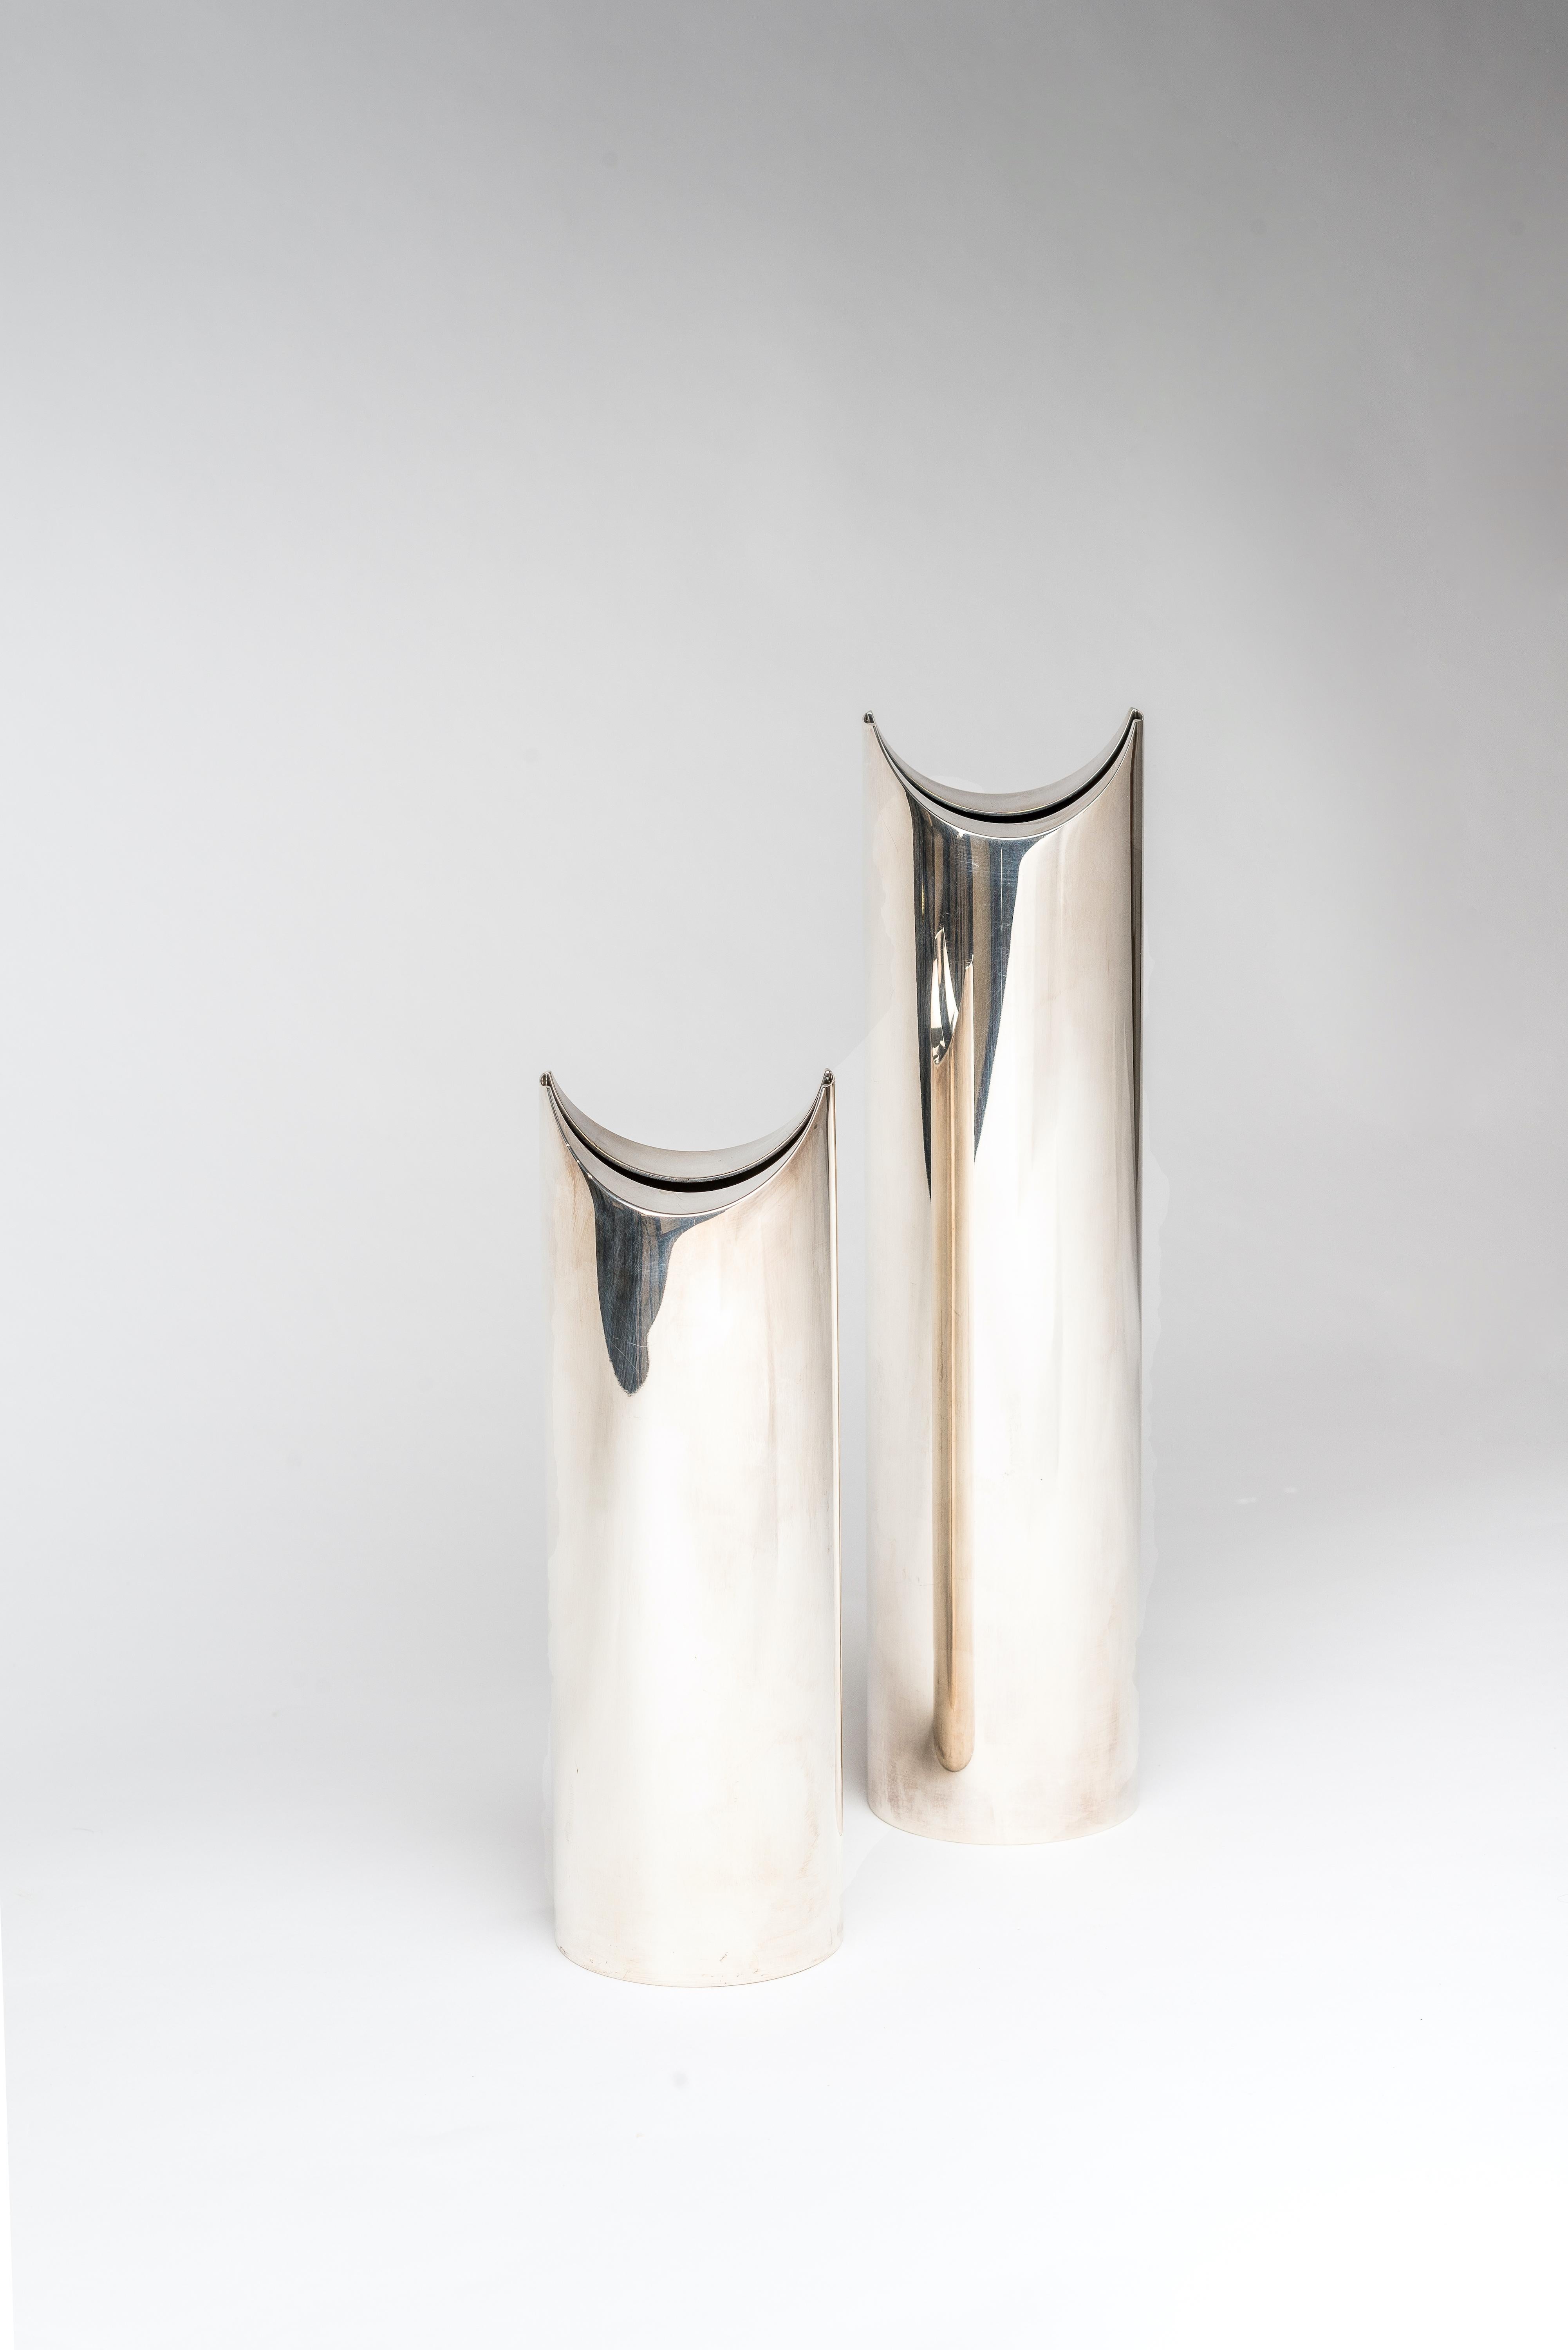 Ein Paar Ohun Ohara Vasen aus versilbertem Metall im modernistischen Stil.
Auf der Unterseite gestempelt: SABBATINI.
Herstellermarke MADE IN ITALY.